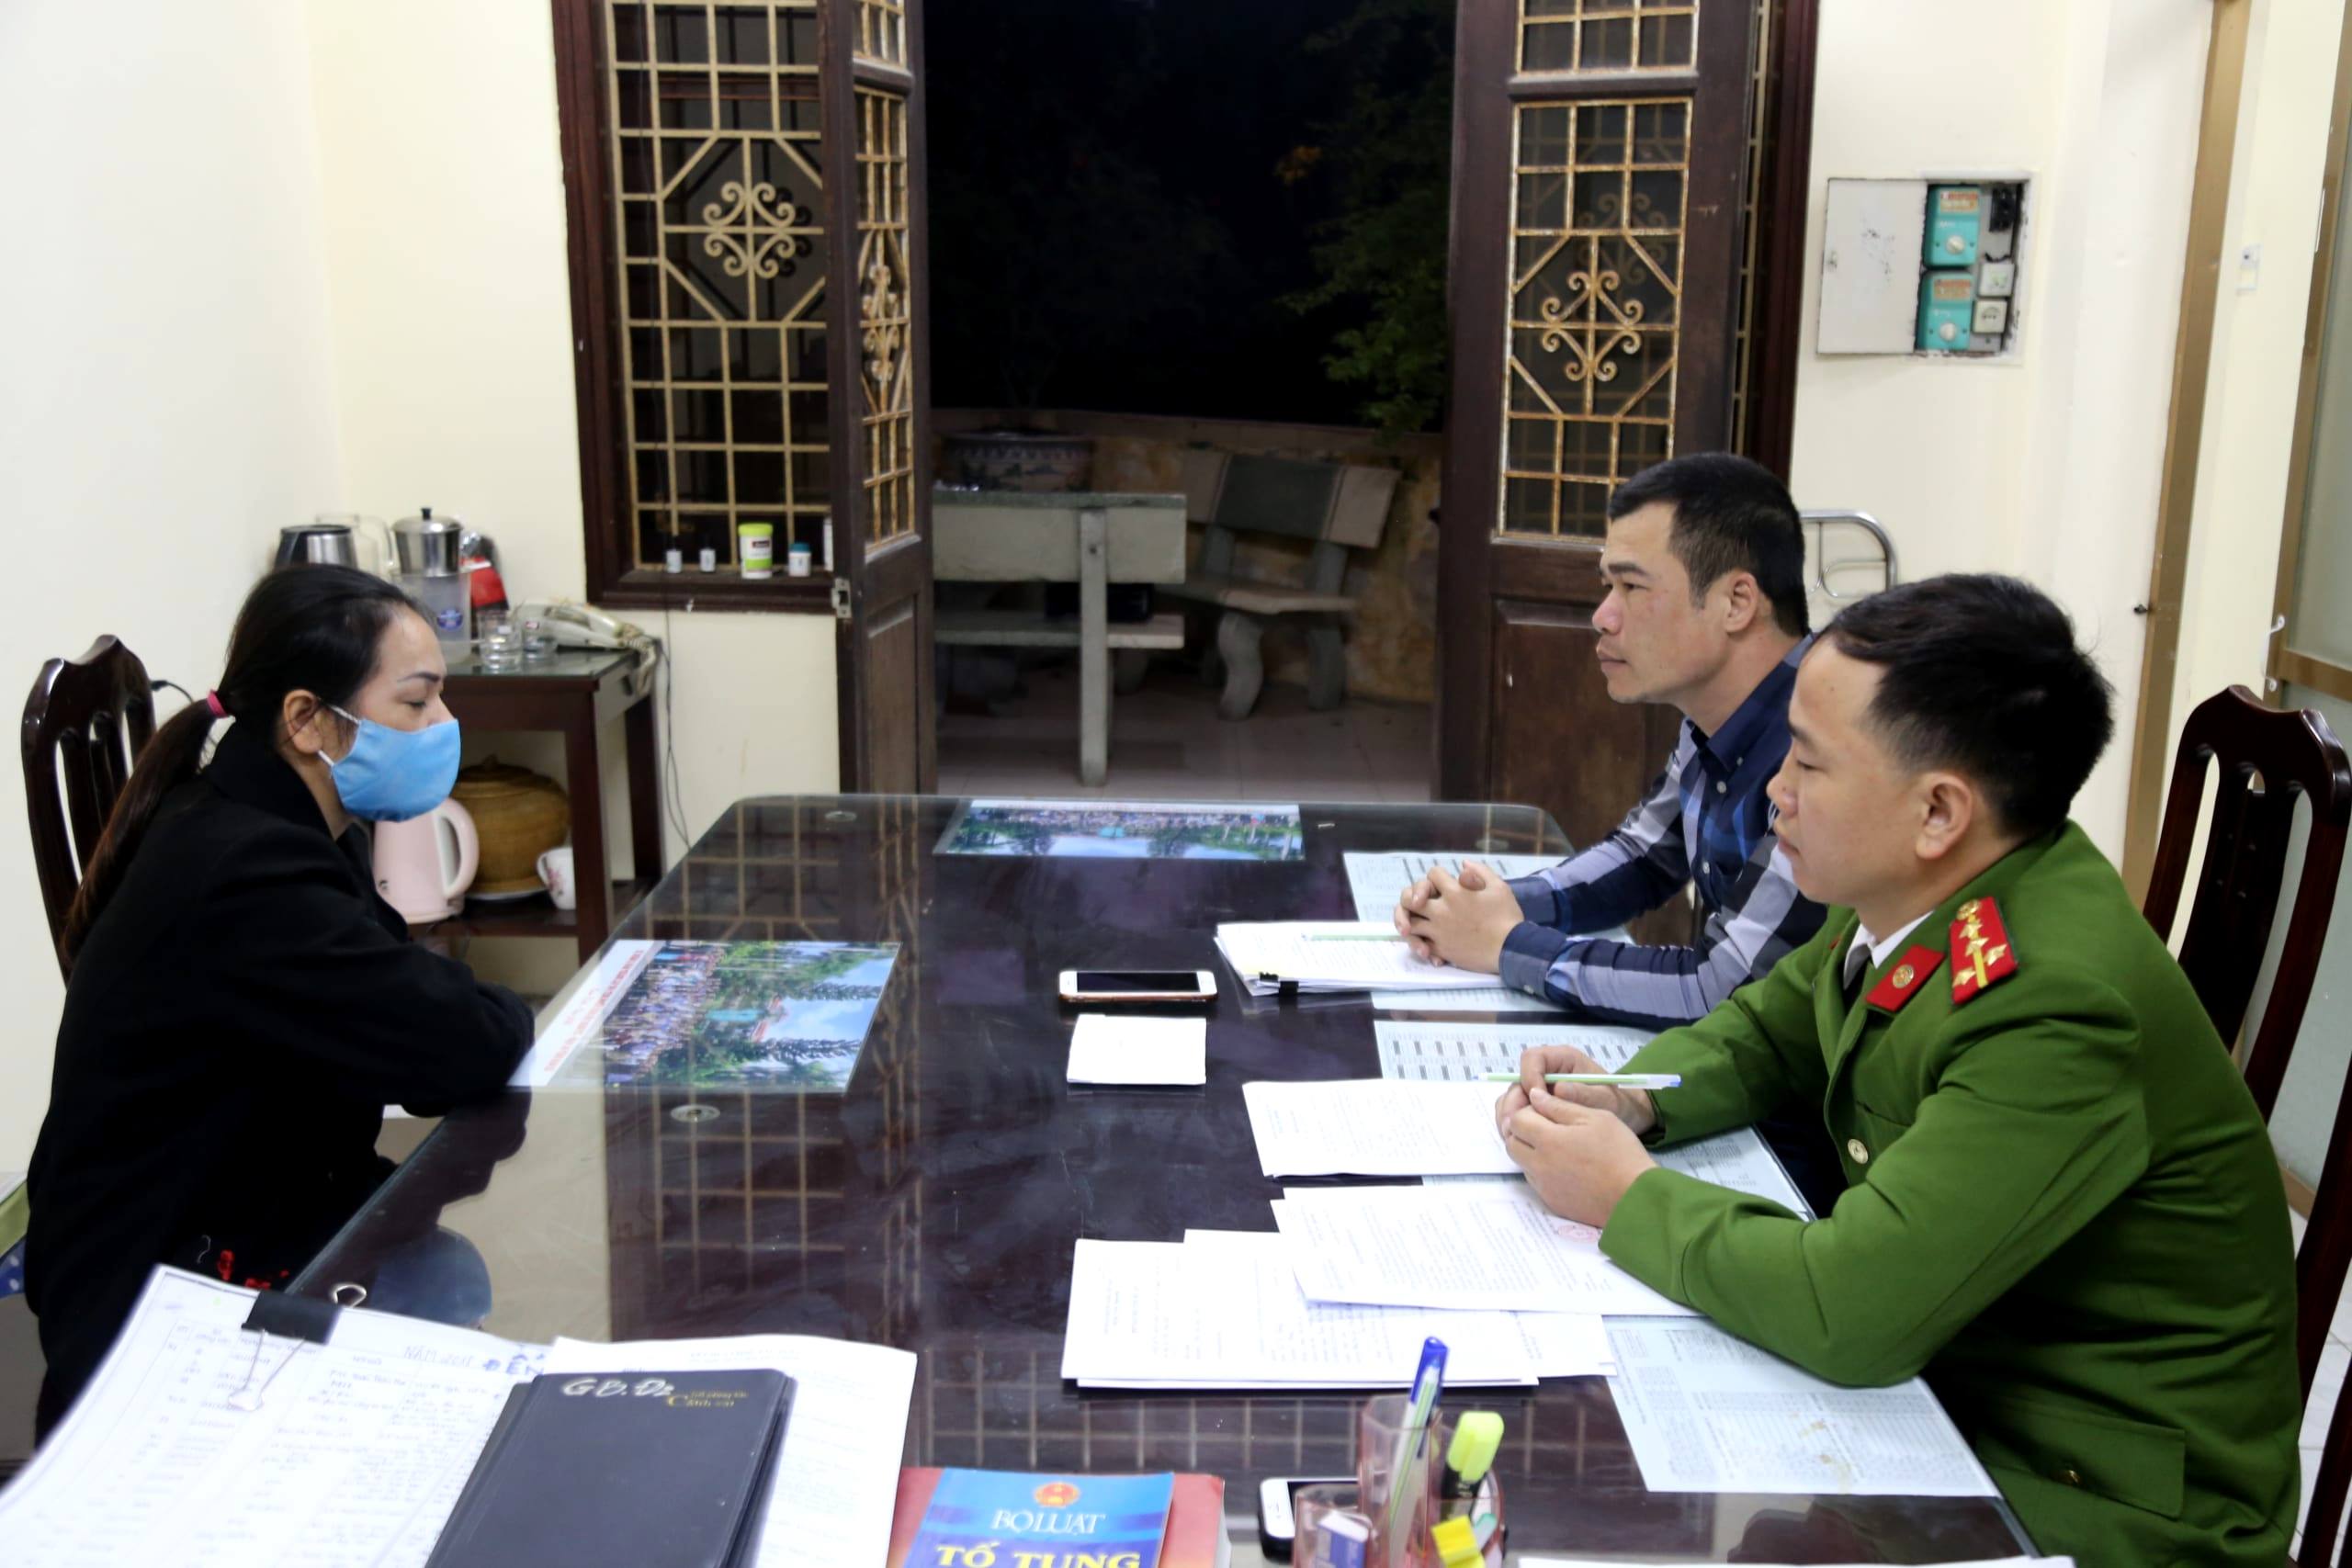 Công an tỉnh Nam Định bắt giữ đối tượng Bùi Thị Khương, nguyên Trưởng Ban kiểm soát Quỹ tín dụng nhân dân thị trấn Cổ Lễ, để điều tra hành vi “Tham ô tài sản”